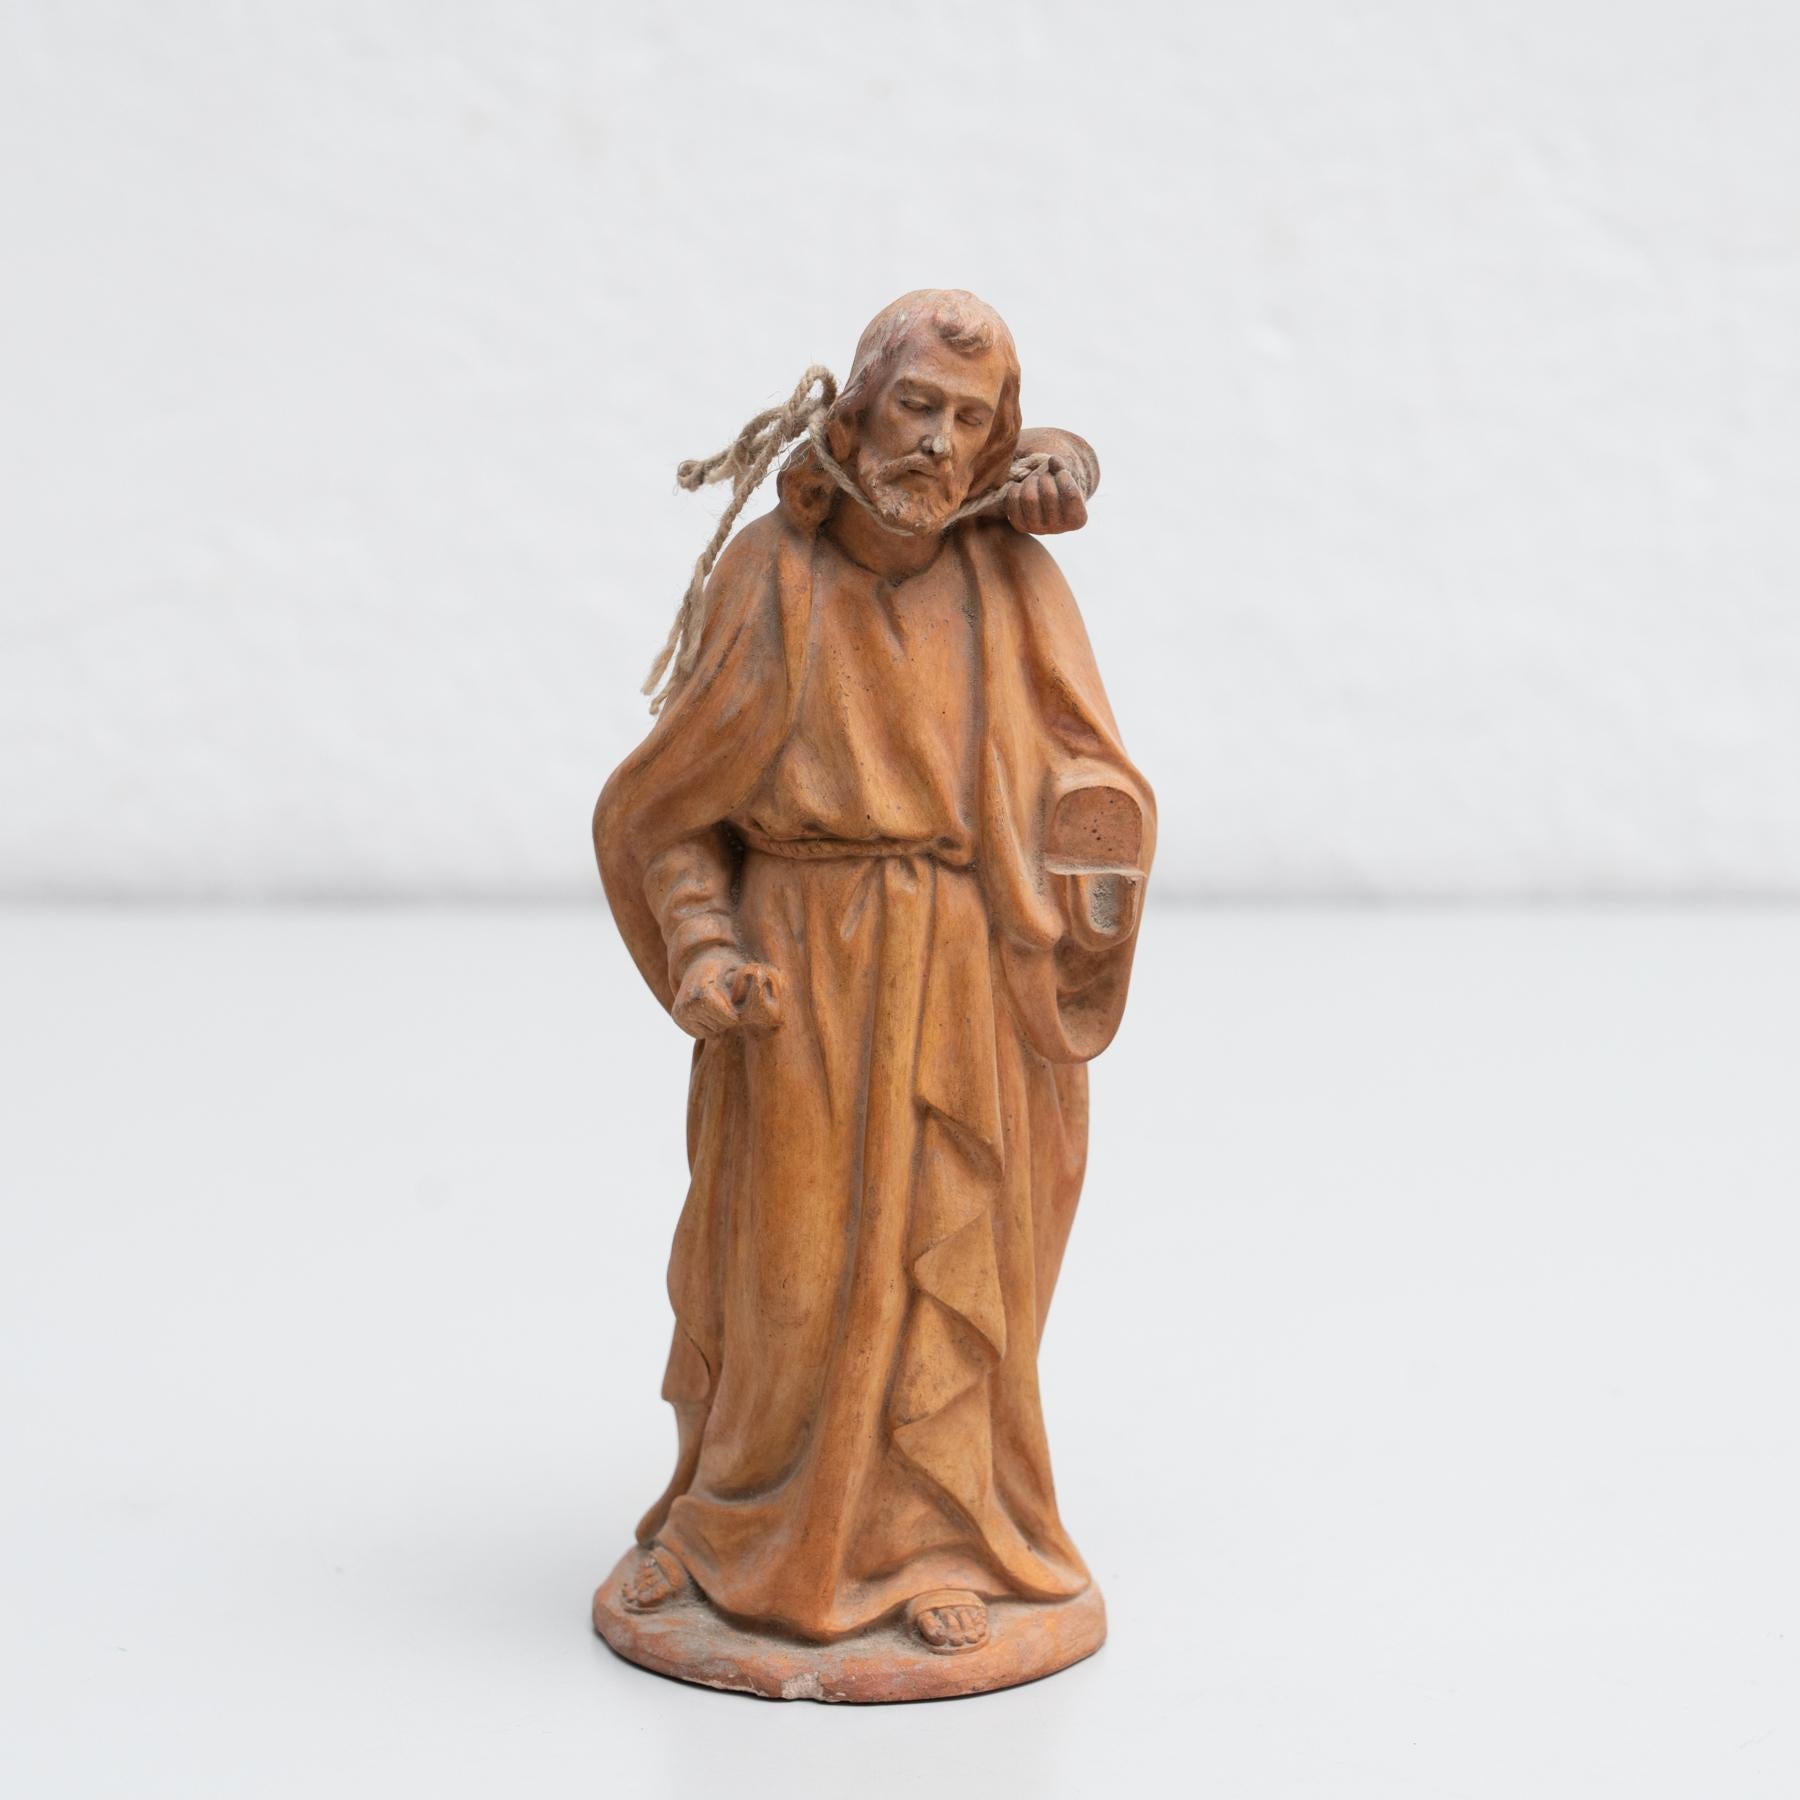 Figure religieuse traditionnelle en plâtre représentant un saint.

Fabriqué dans un atelier catalan traditionnel à Olot, en Espagne, vers 1950.

En état d'origine, avec une usure mineure conforme à l'âge et à l'utilisation, préservant une belle